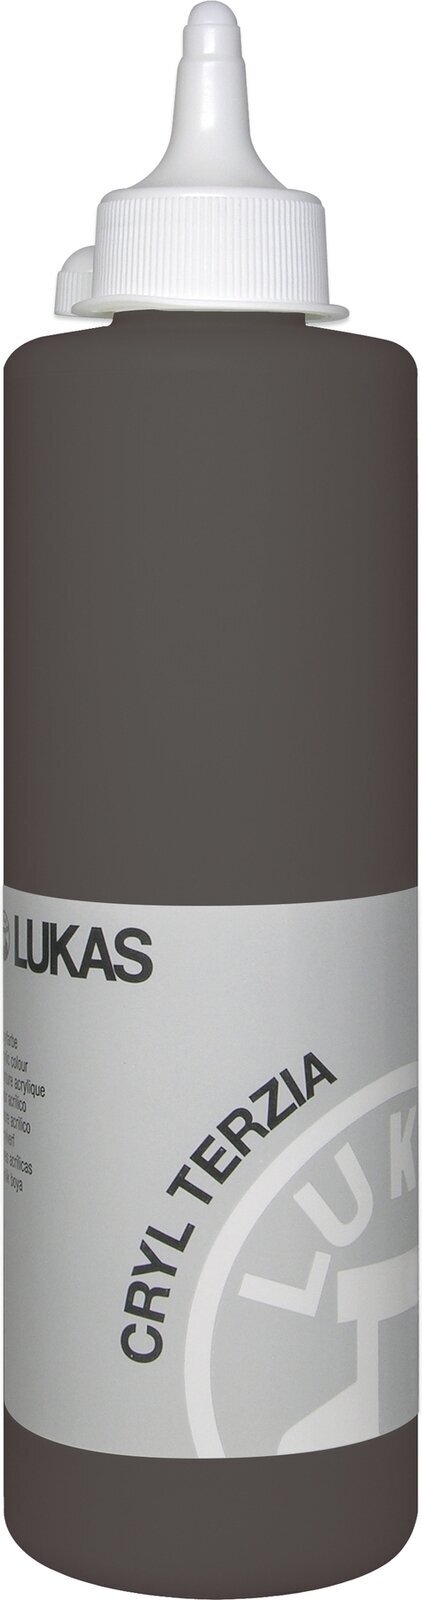 Tinta acrílica Lukas Cryl Terzia Acrylic Paint Plastic Bottle Tinta acrílica Umber 500 ml 1 un.